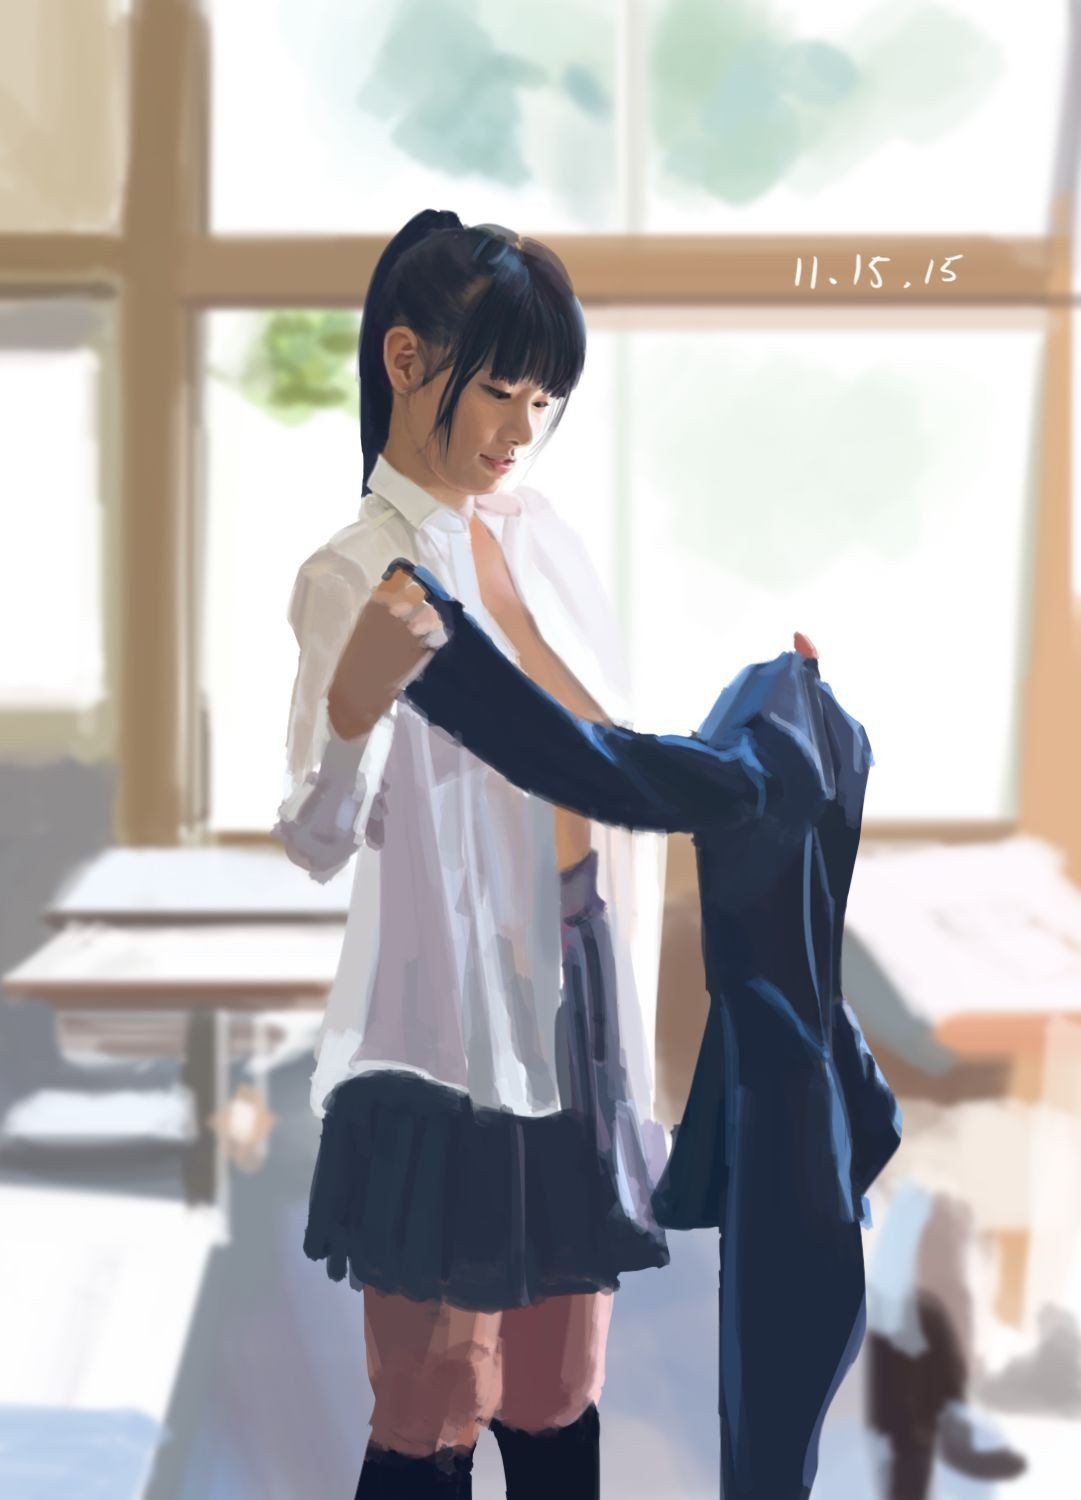 Japanese, Anime girls, 2D Wallpaper